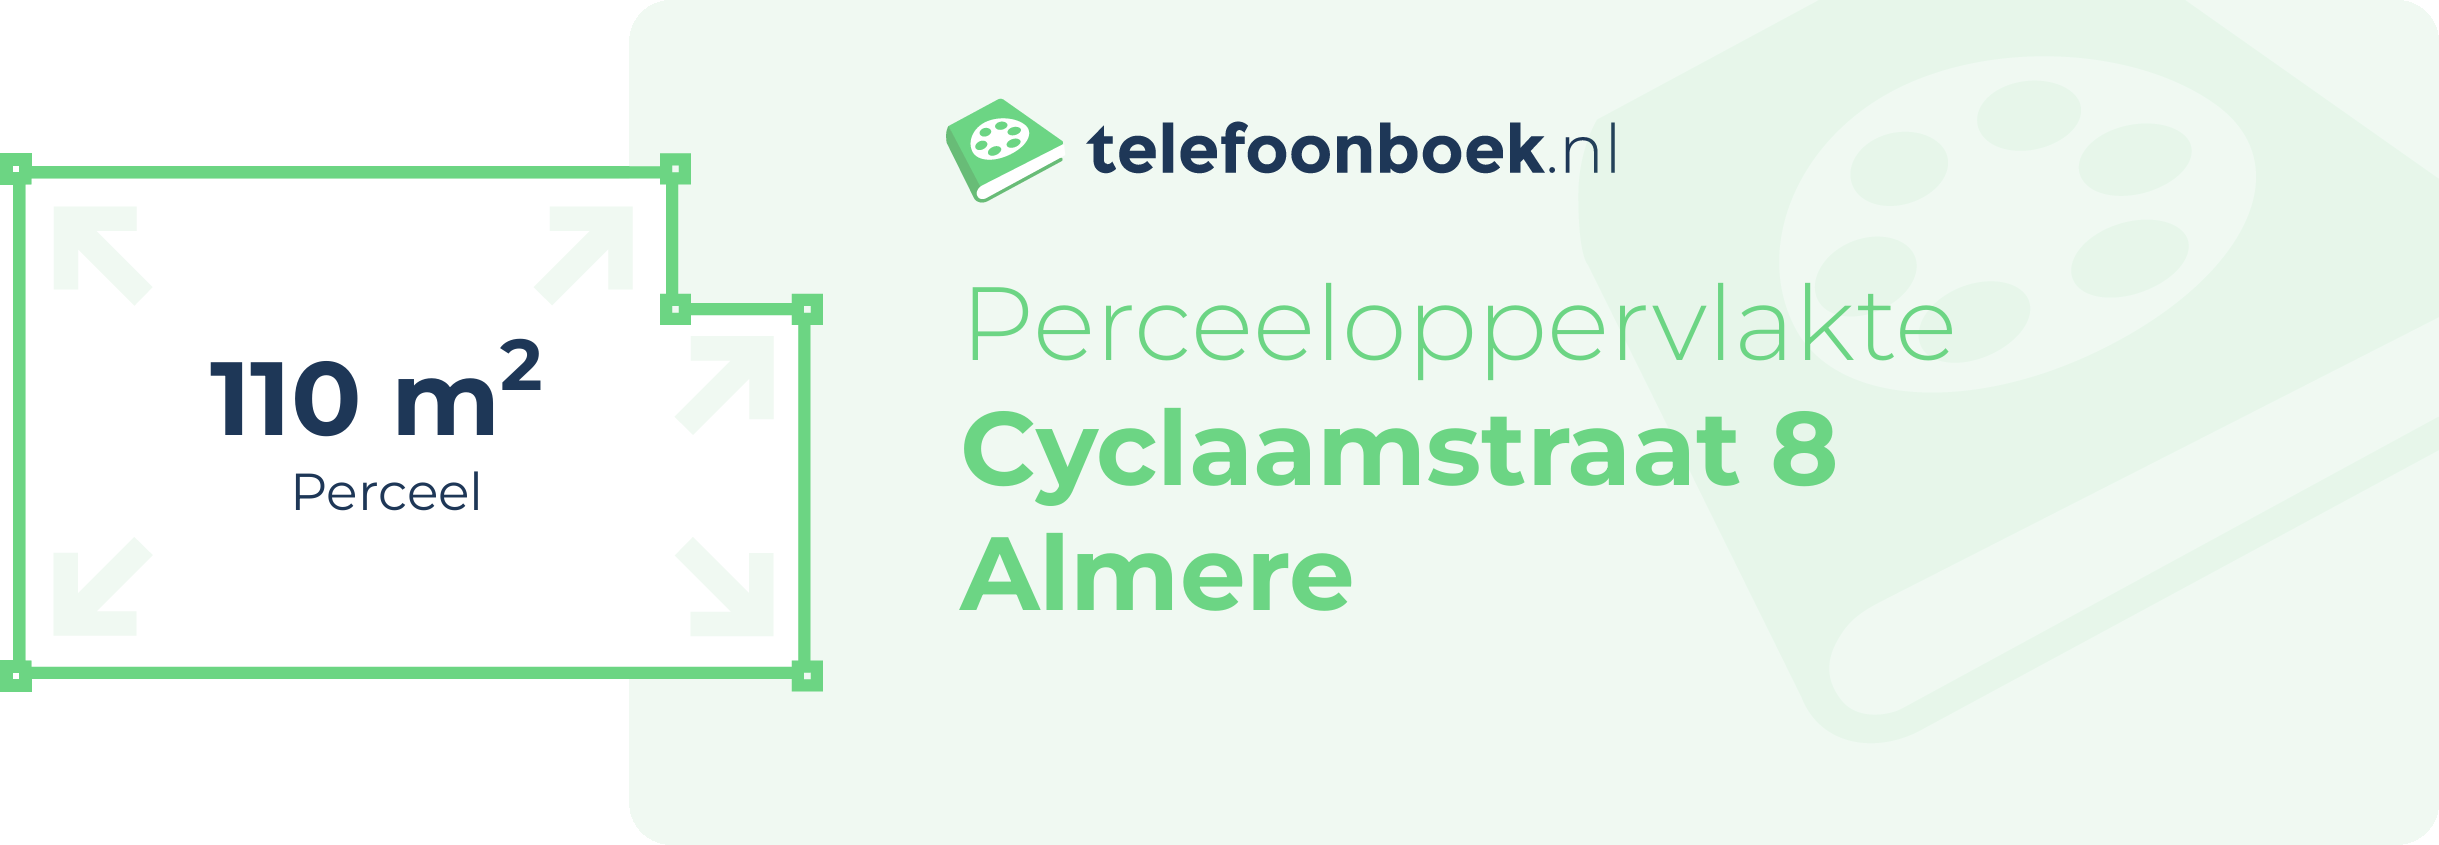 Perceeloppervlakte Cyclaamstraat 8 Almere